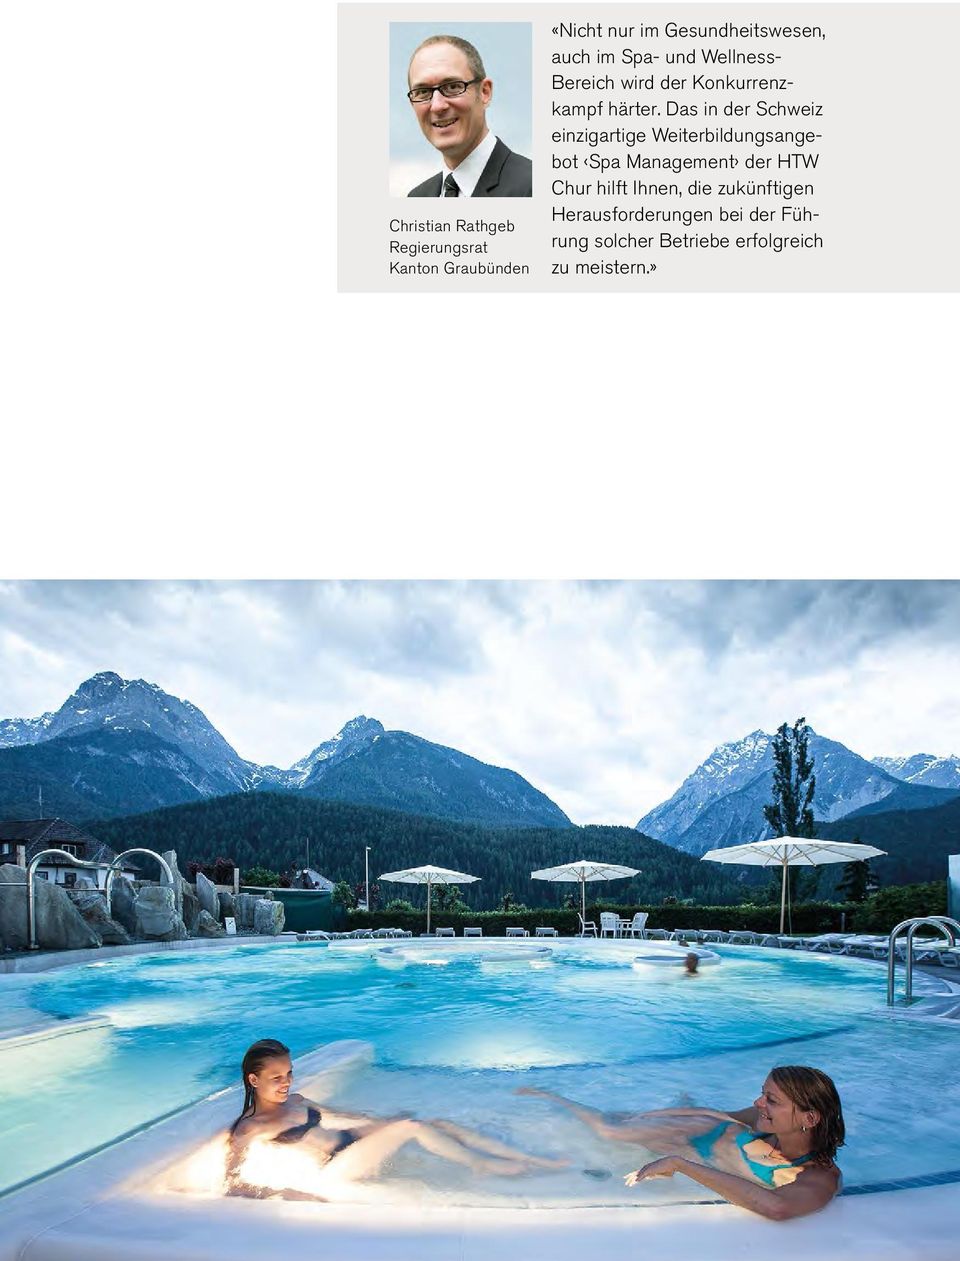 Das in der Schweiz einzigartige Weiterbildungsangebot Spa Management der HTW Chur